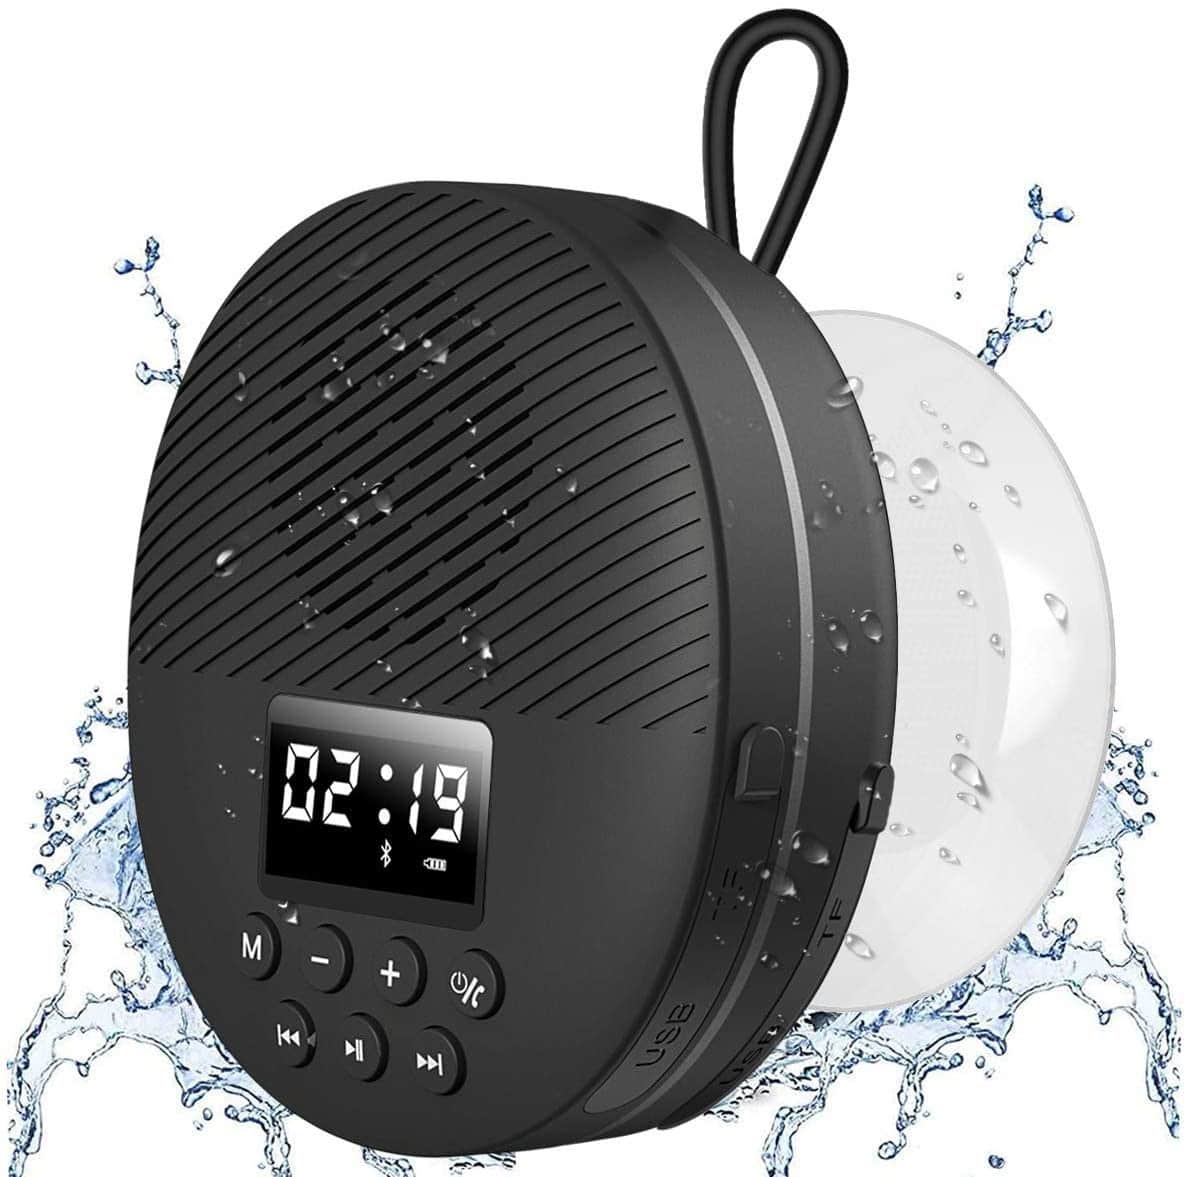 AGPTEK Shower Radio Speaker with Bluetooth